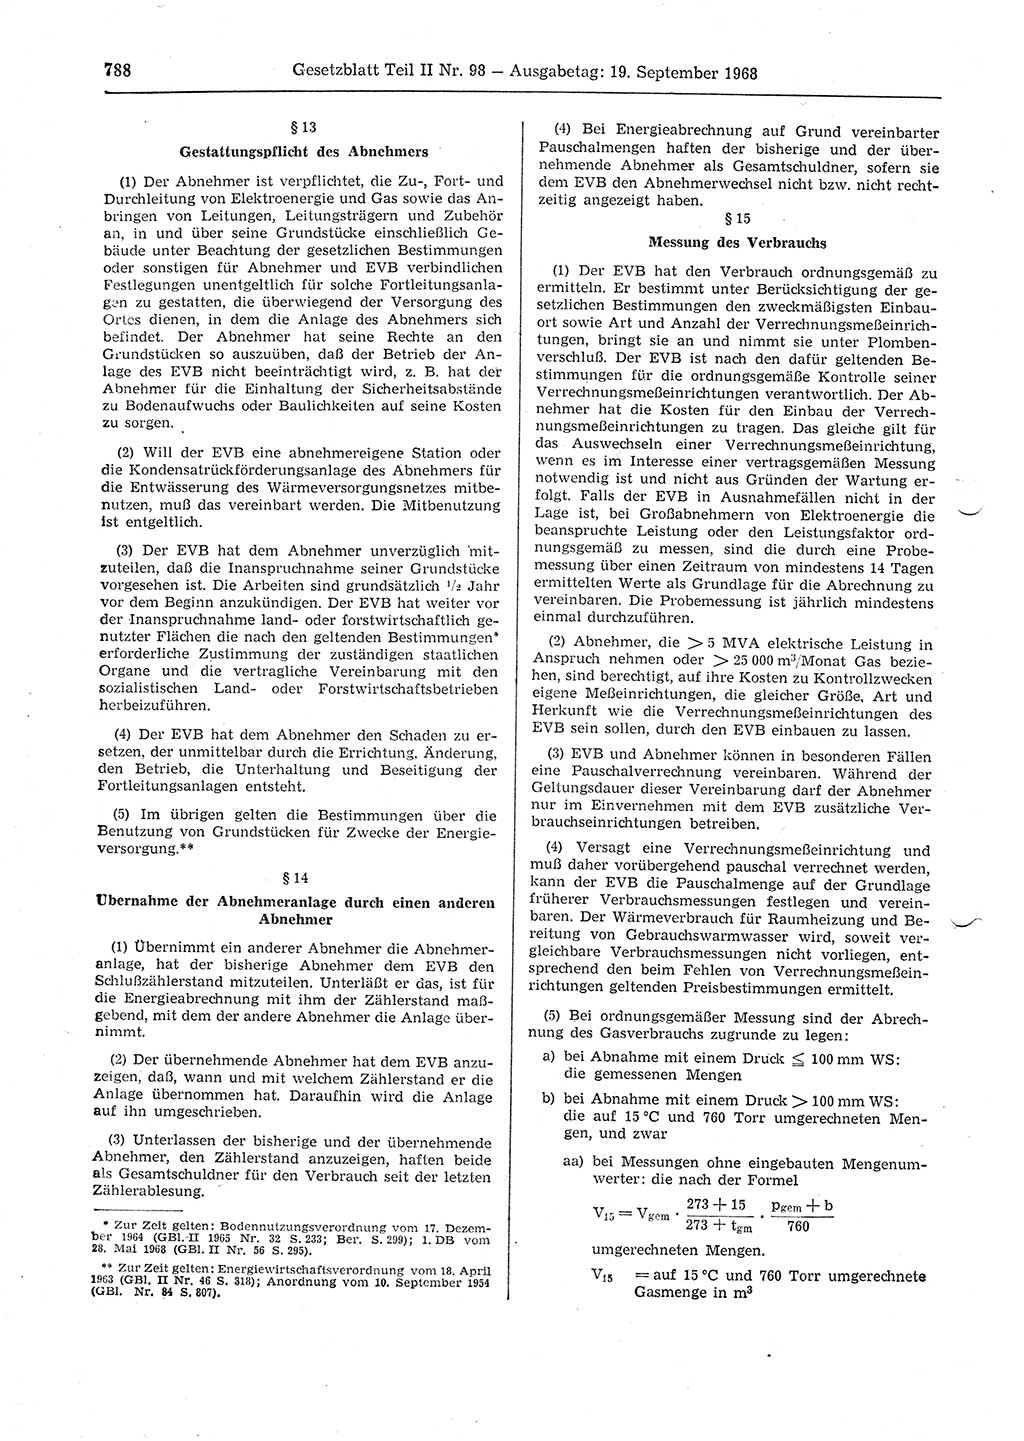 Gesetzblatt (GBl.) der Deutschen Demokratischen Republik (DDR) Teil ⅠⅠ 1968, Seite 788 (GBl. DDR ⅠⅠ 1968, S. 788)